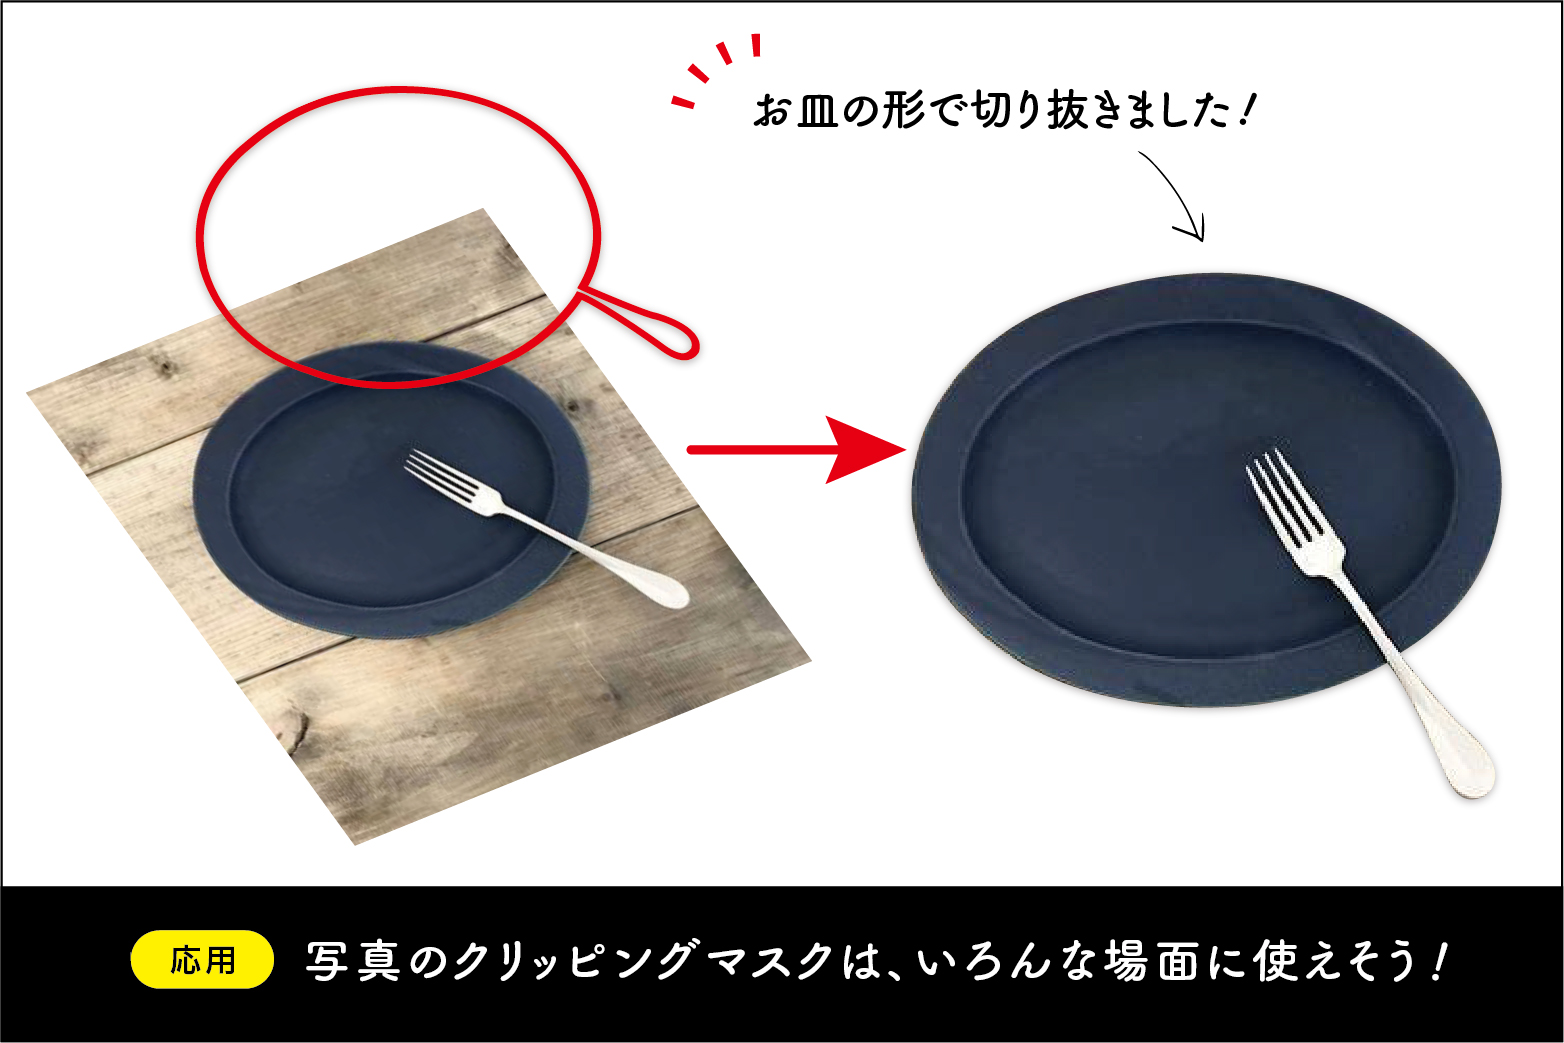 『ペンツール』を使ってお皿の形に切り抜こう